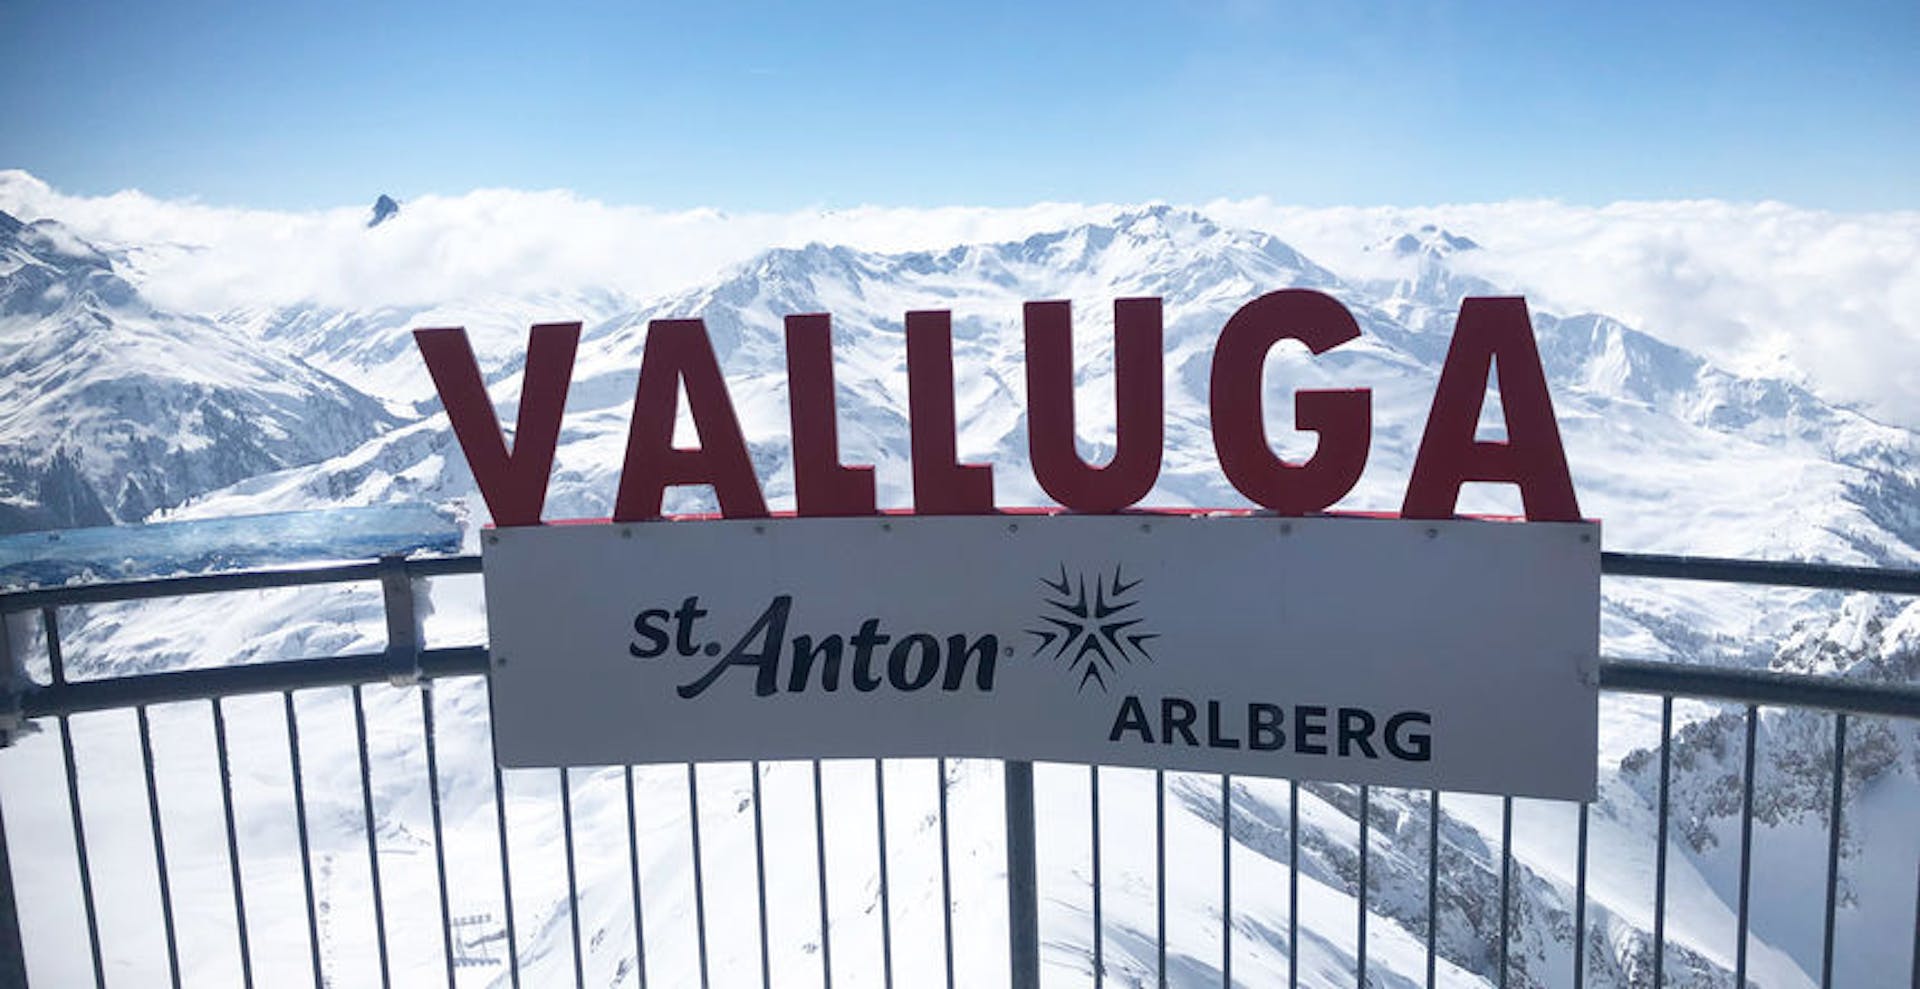 Highest point at Valluga